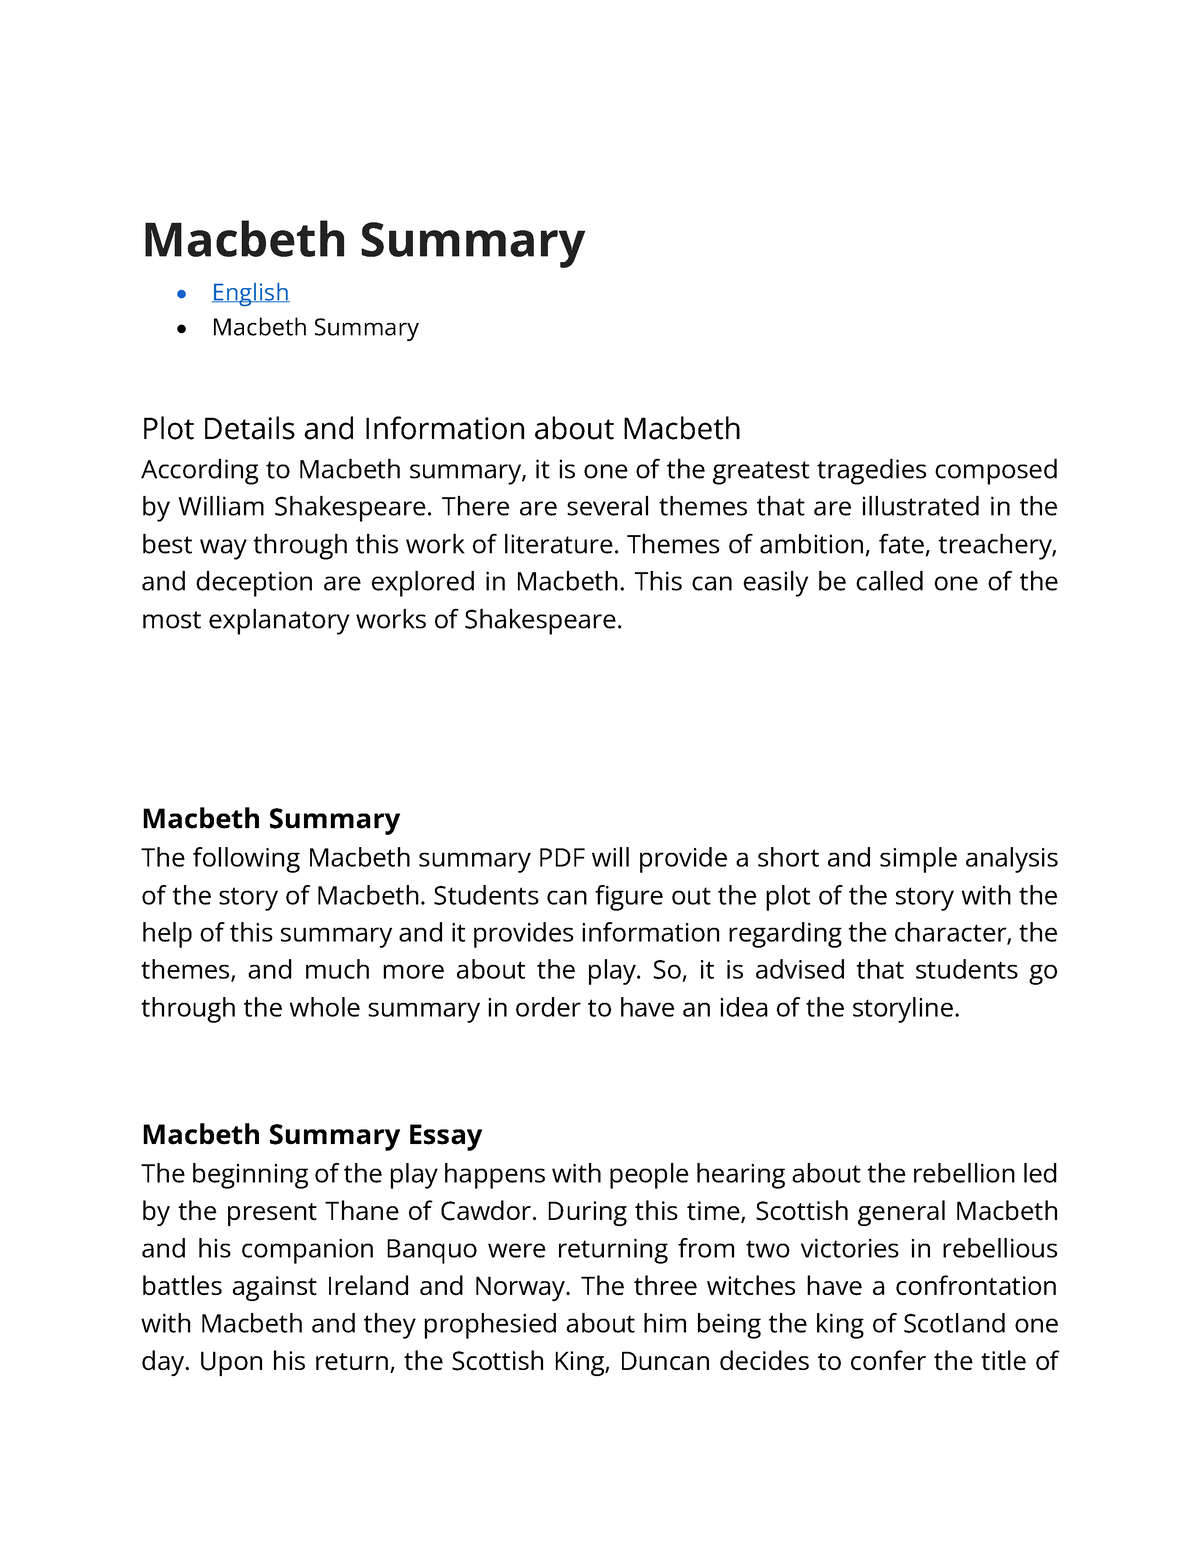 summary of macbeth for essay